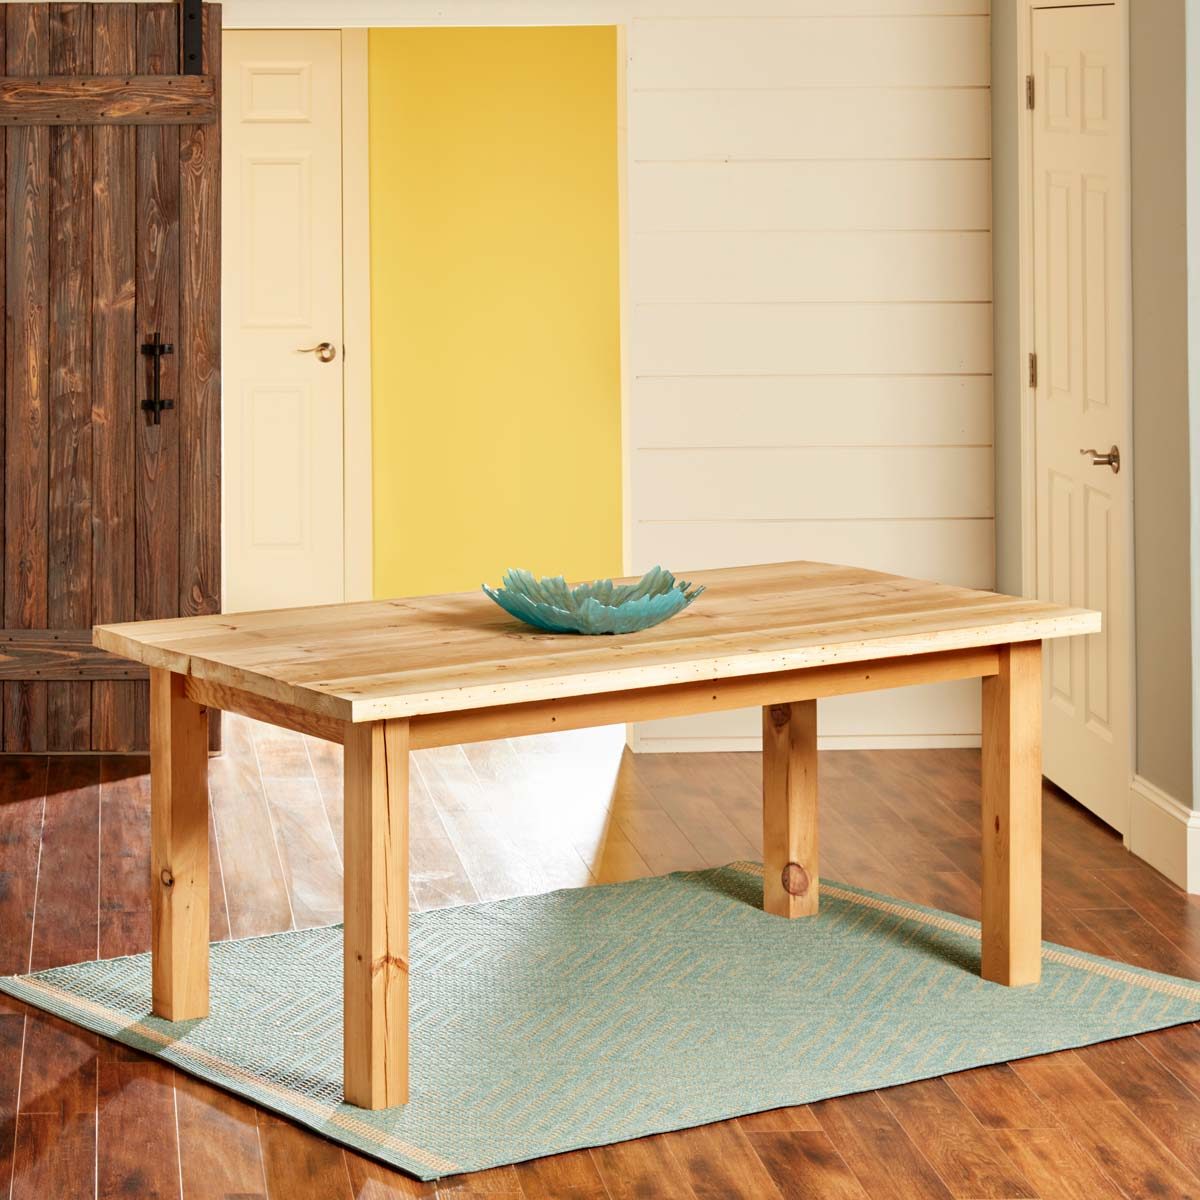 Build a Simple Reclaimed Wood Table  Family Handyman